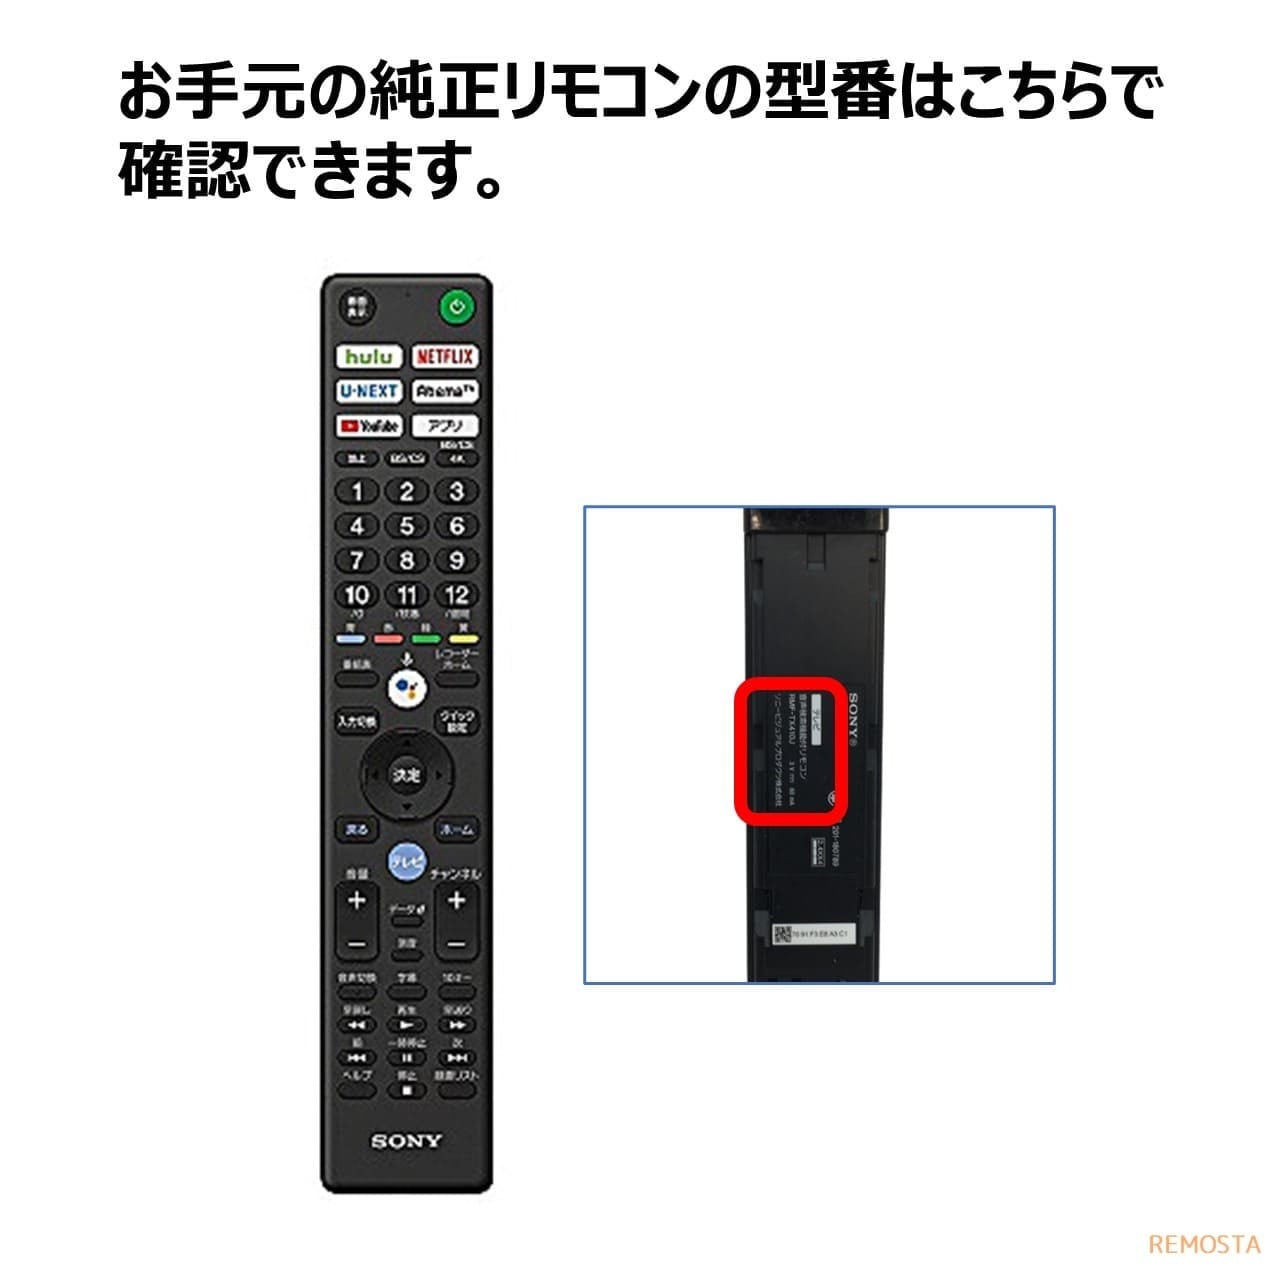 100%正規品 SONY テレビ BRAVIA 純正リモコン RMF-TX300J 映像機器